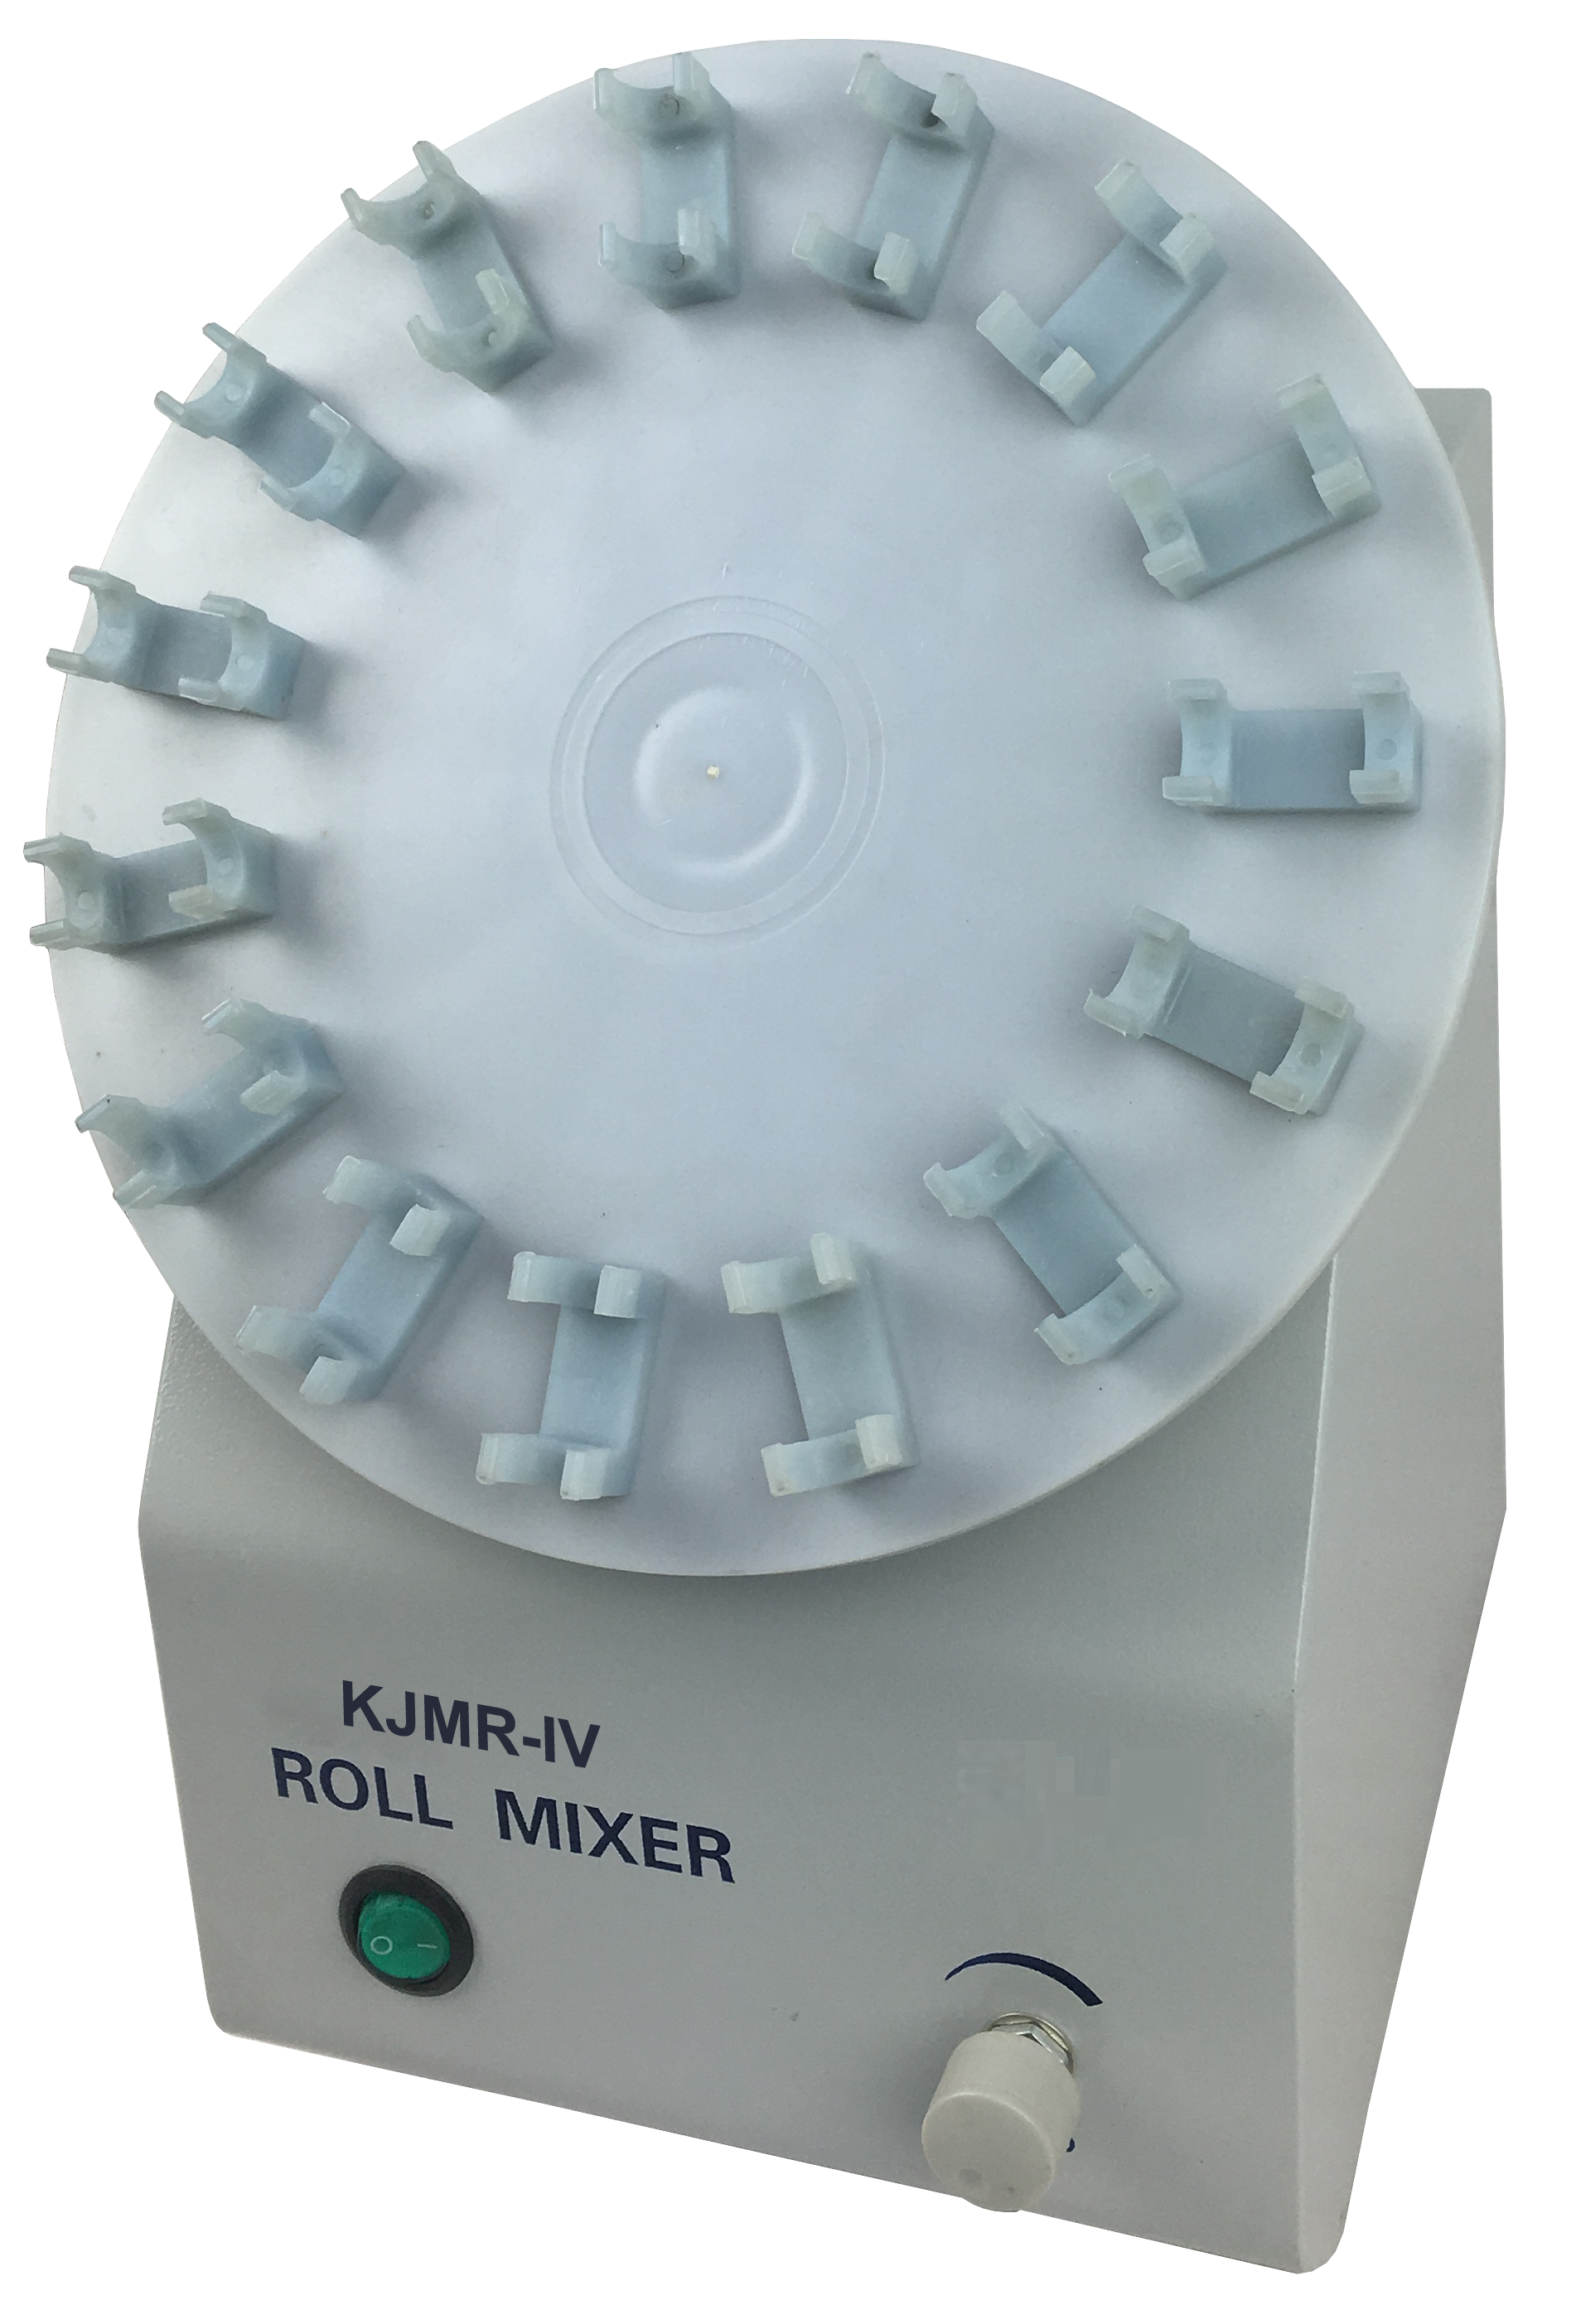 Blood Mixer KJMR-IV